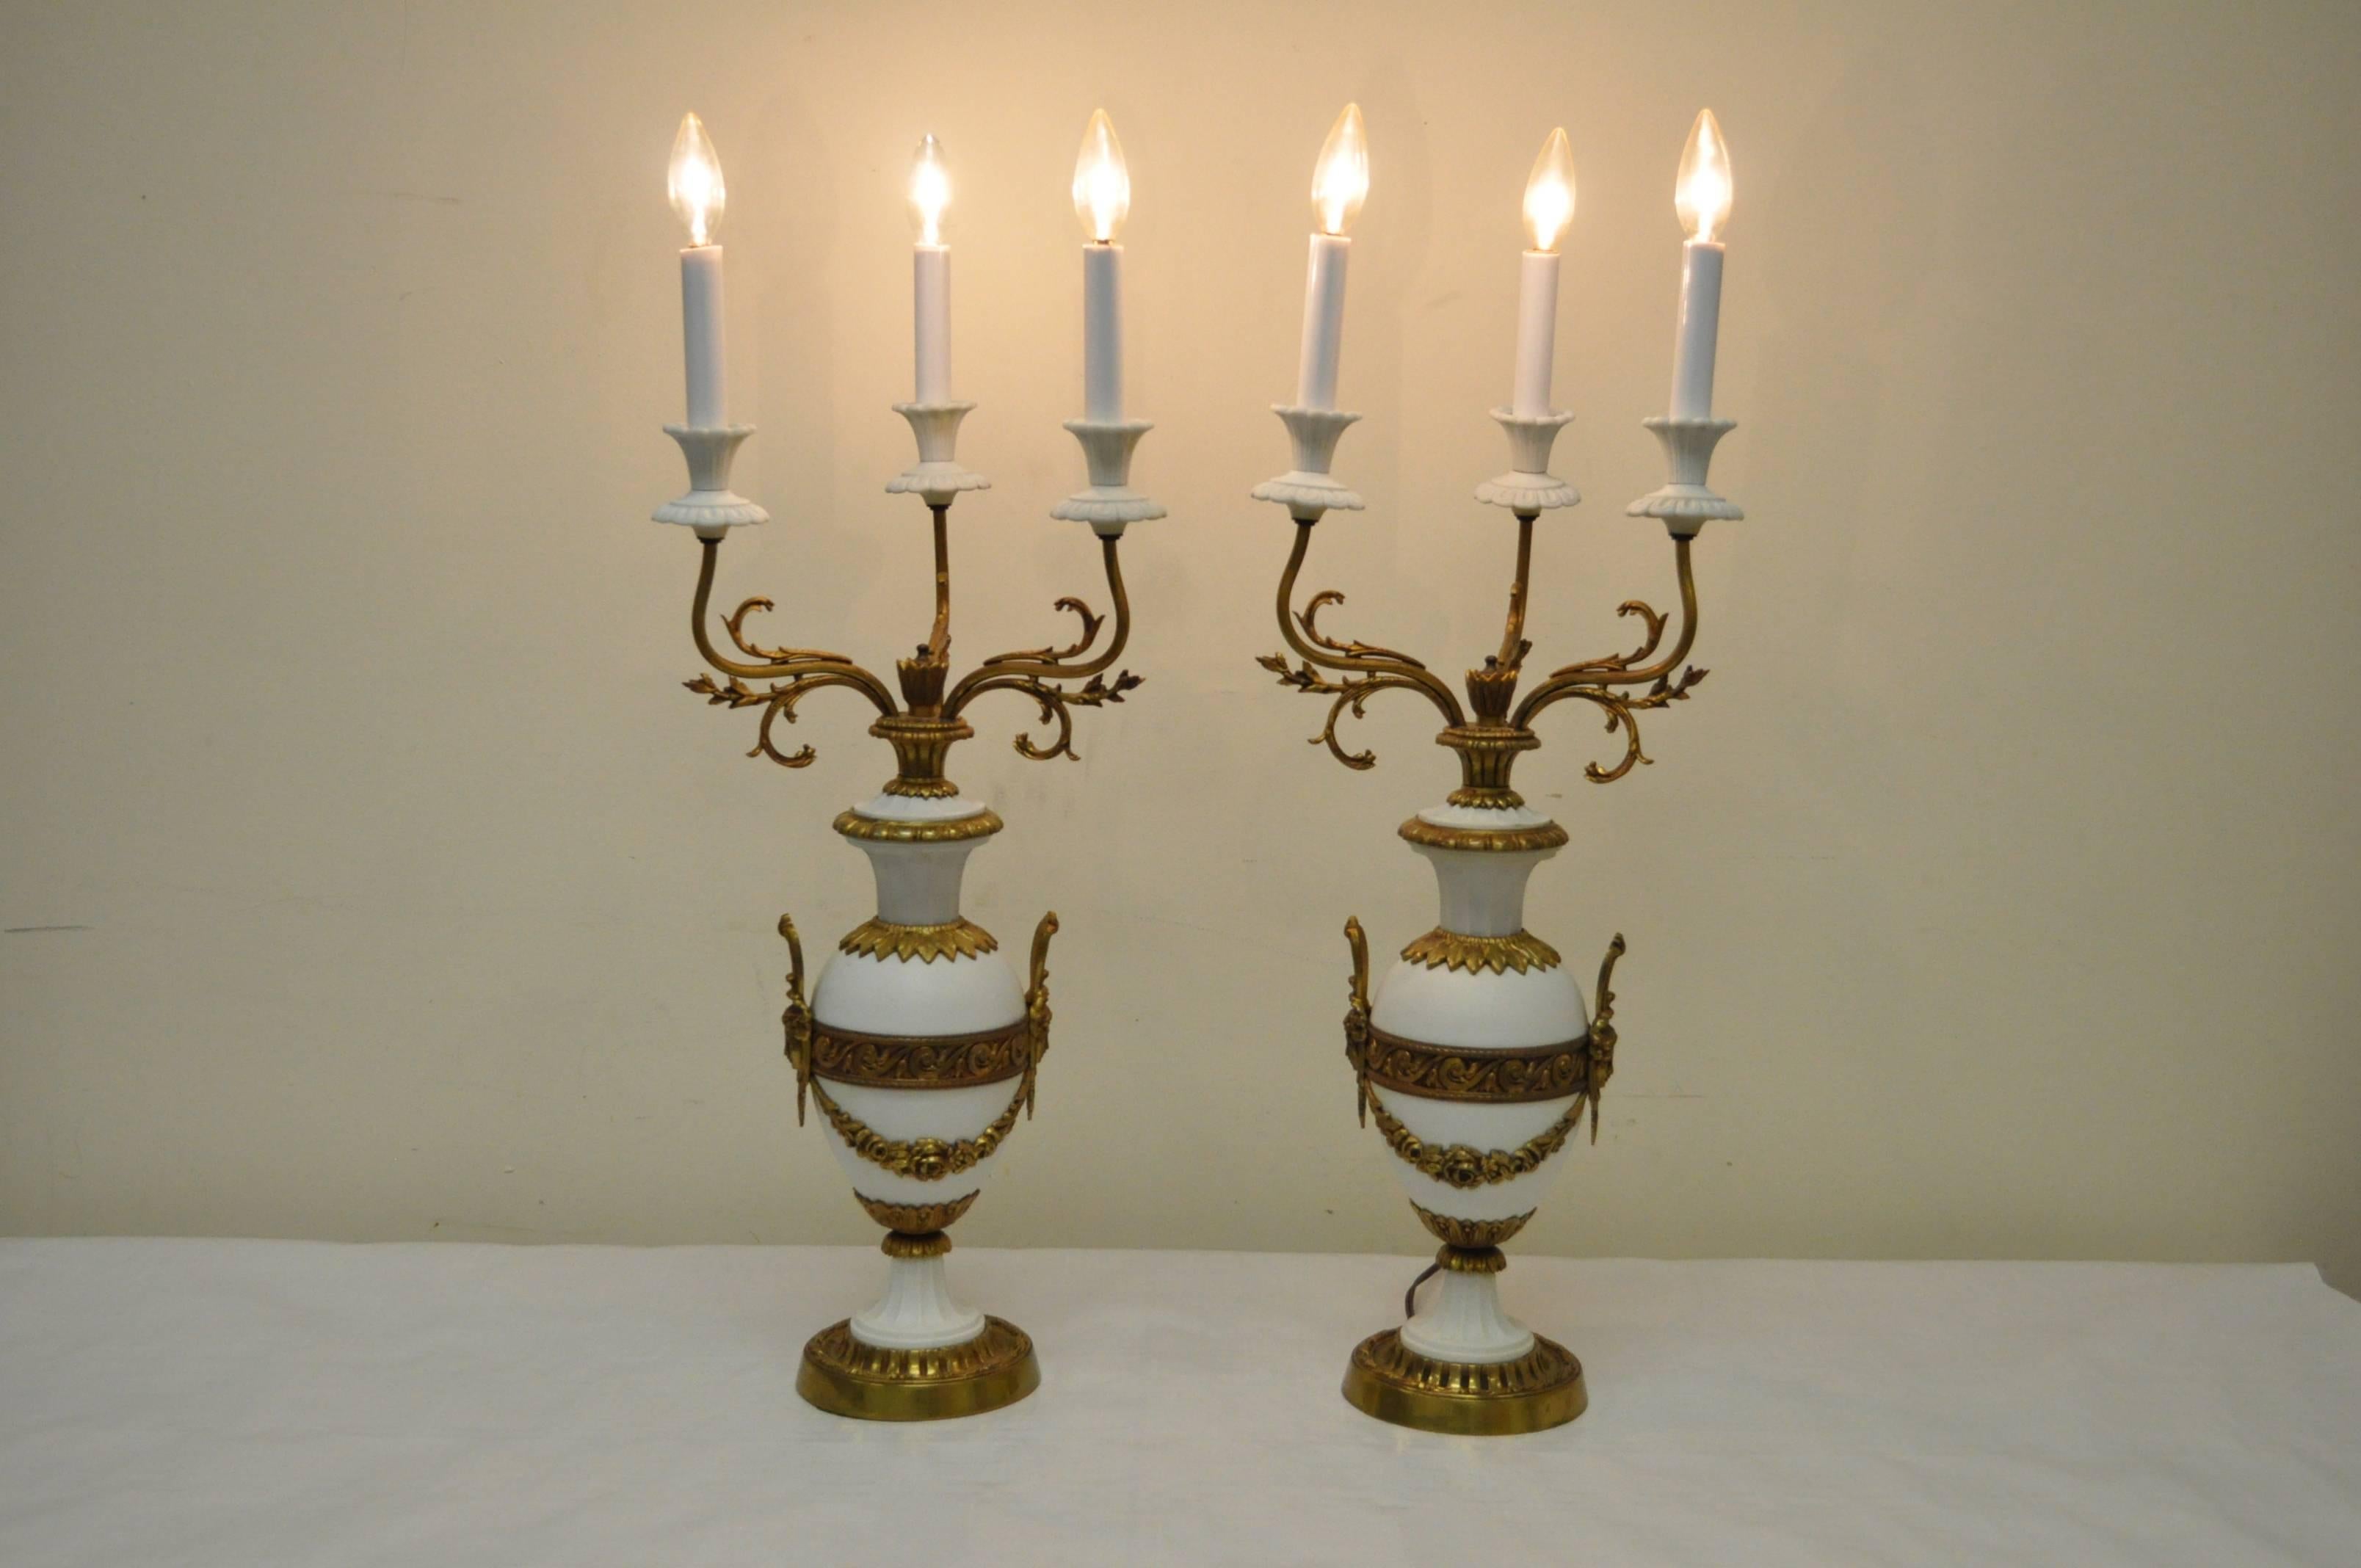 Elégante paire de lampes candélabres figuratives en porcelaine française et bronze dans le goût Louis XV / XVI. Les lampes présentent des draperies florales, des visages de jeunes filles, trois lumières chacune et une forme élégante. Marqué 